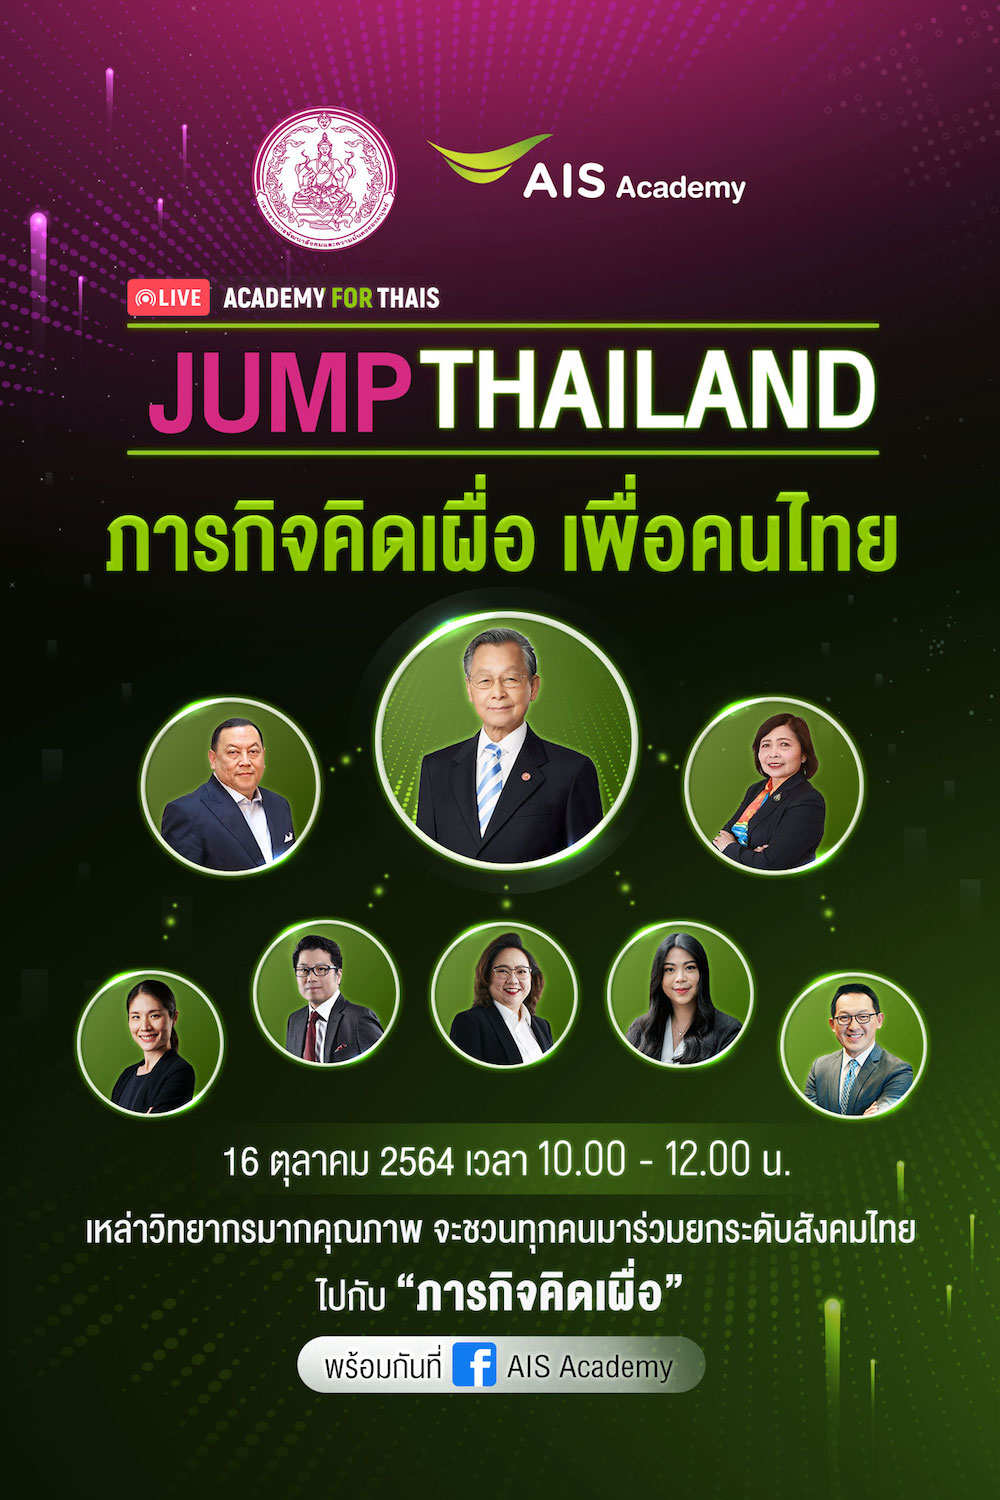 AIS ACADEMY ชวนคนไทยร่วมกระโดดก้าวข้ามฝ่าวิกฤต JUMP THAILAND  ผนึกกำลัง ก.พัฒนาสังคมฯ พร้อมภาครัฐ เอกชน สัมมนาออนไลน์แห่งปี  ขยายผลภารกิจคิดเผื่อ เพื่อคนไทย สร้างโอกาสการเติบโตและเอาตัวรอดในโลกยุคดิจิทัล